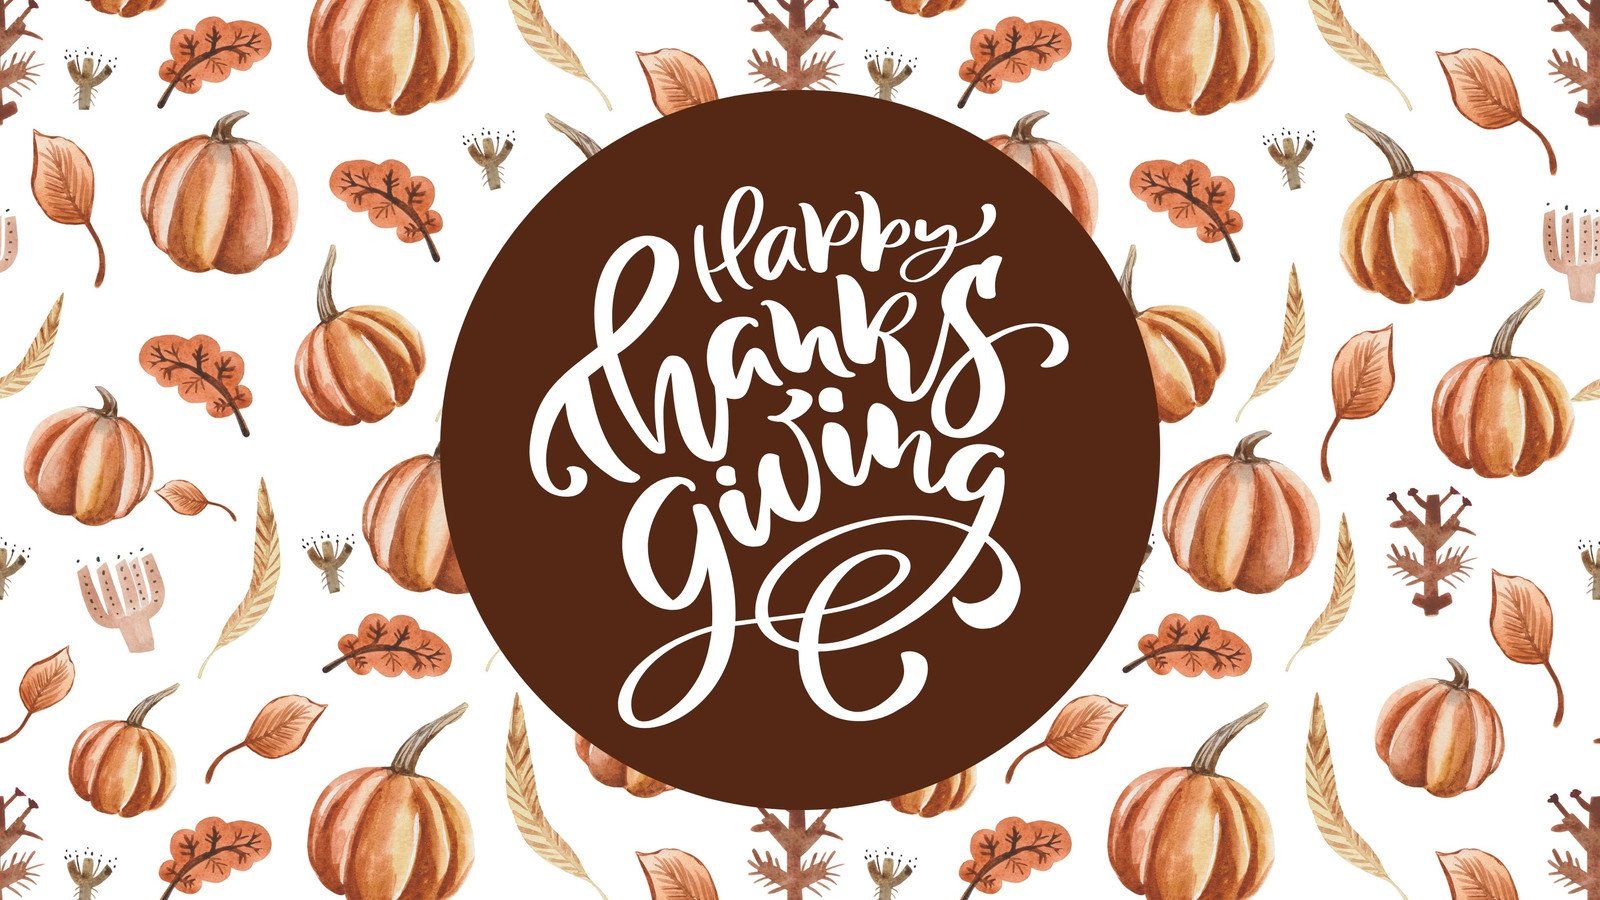 to edit Thanksgiving desktop wallpaper